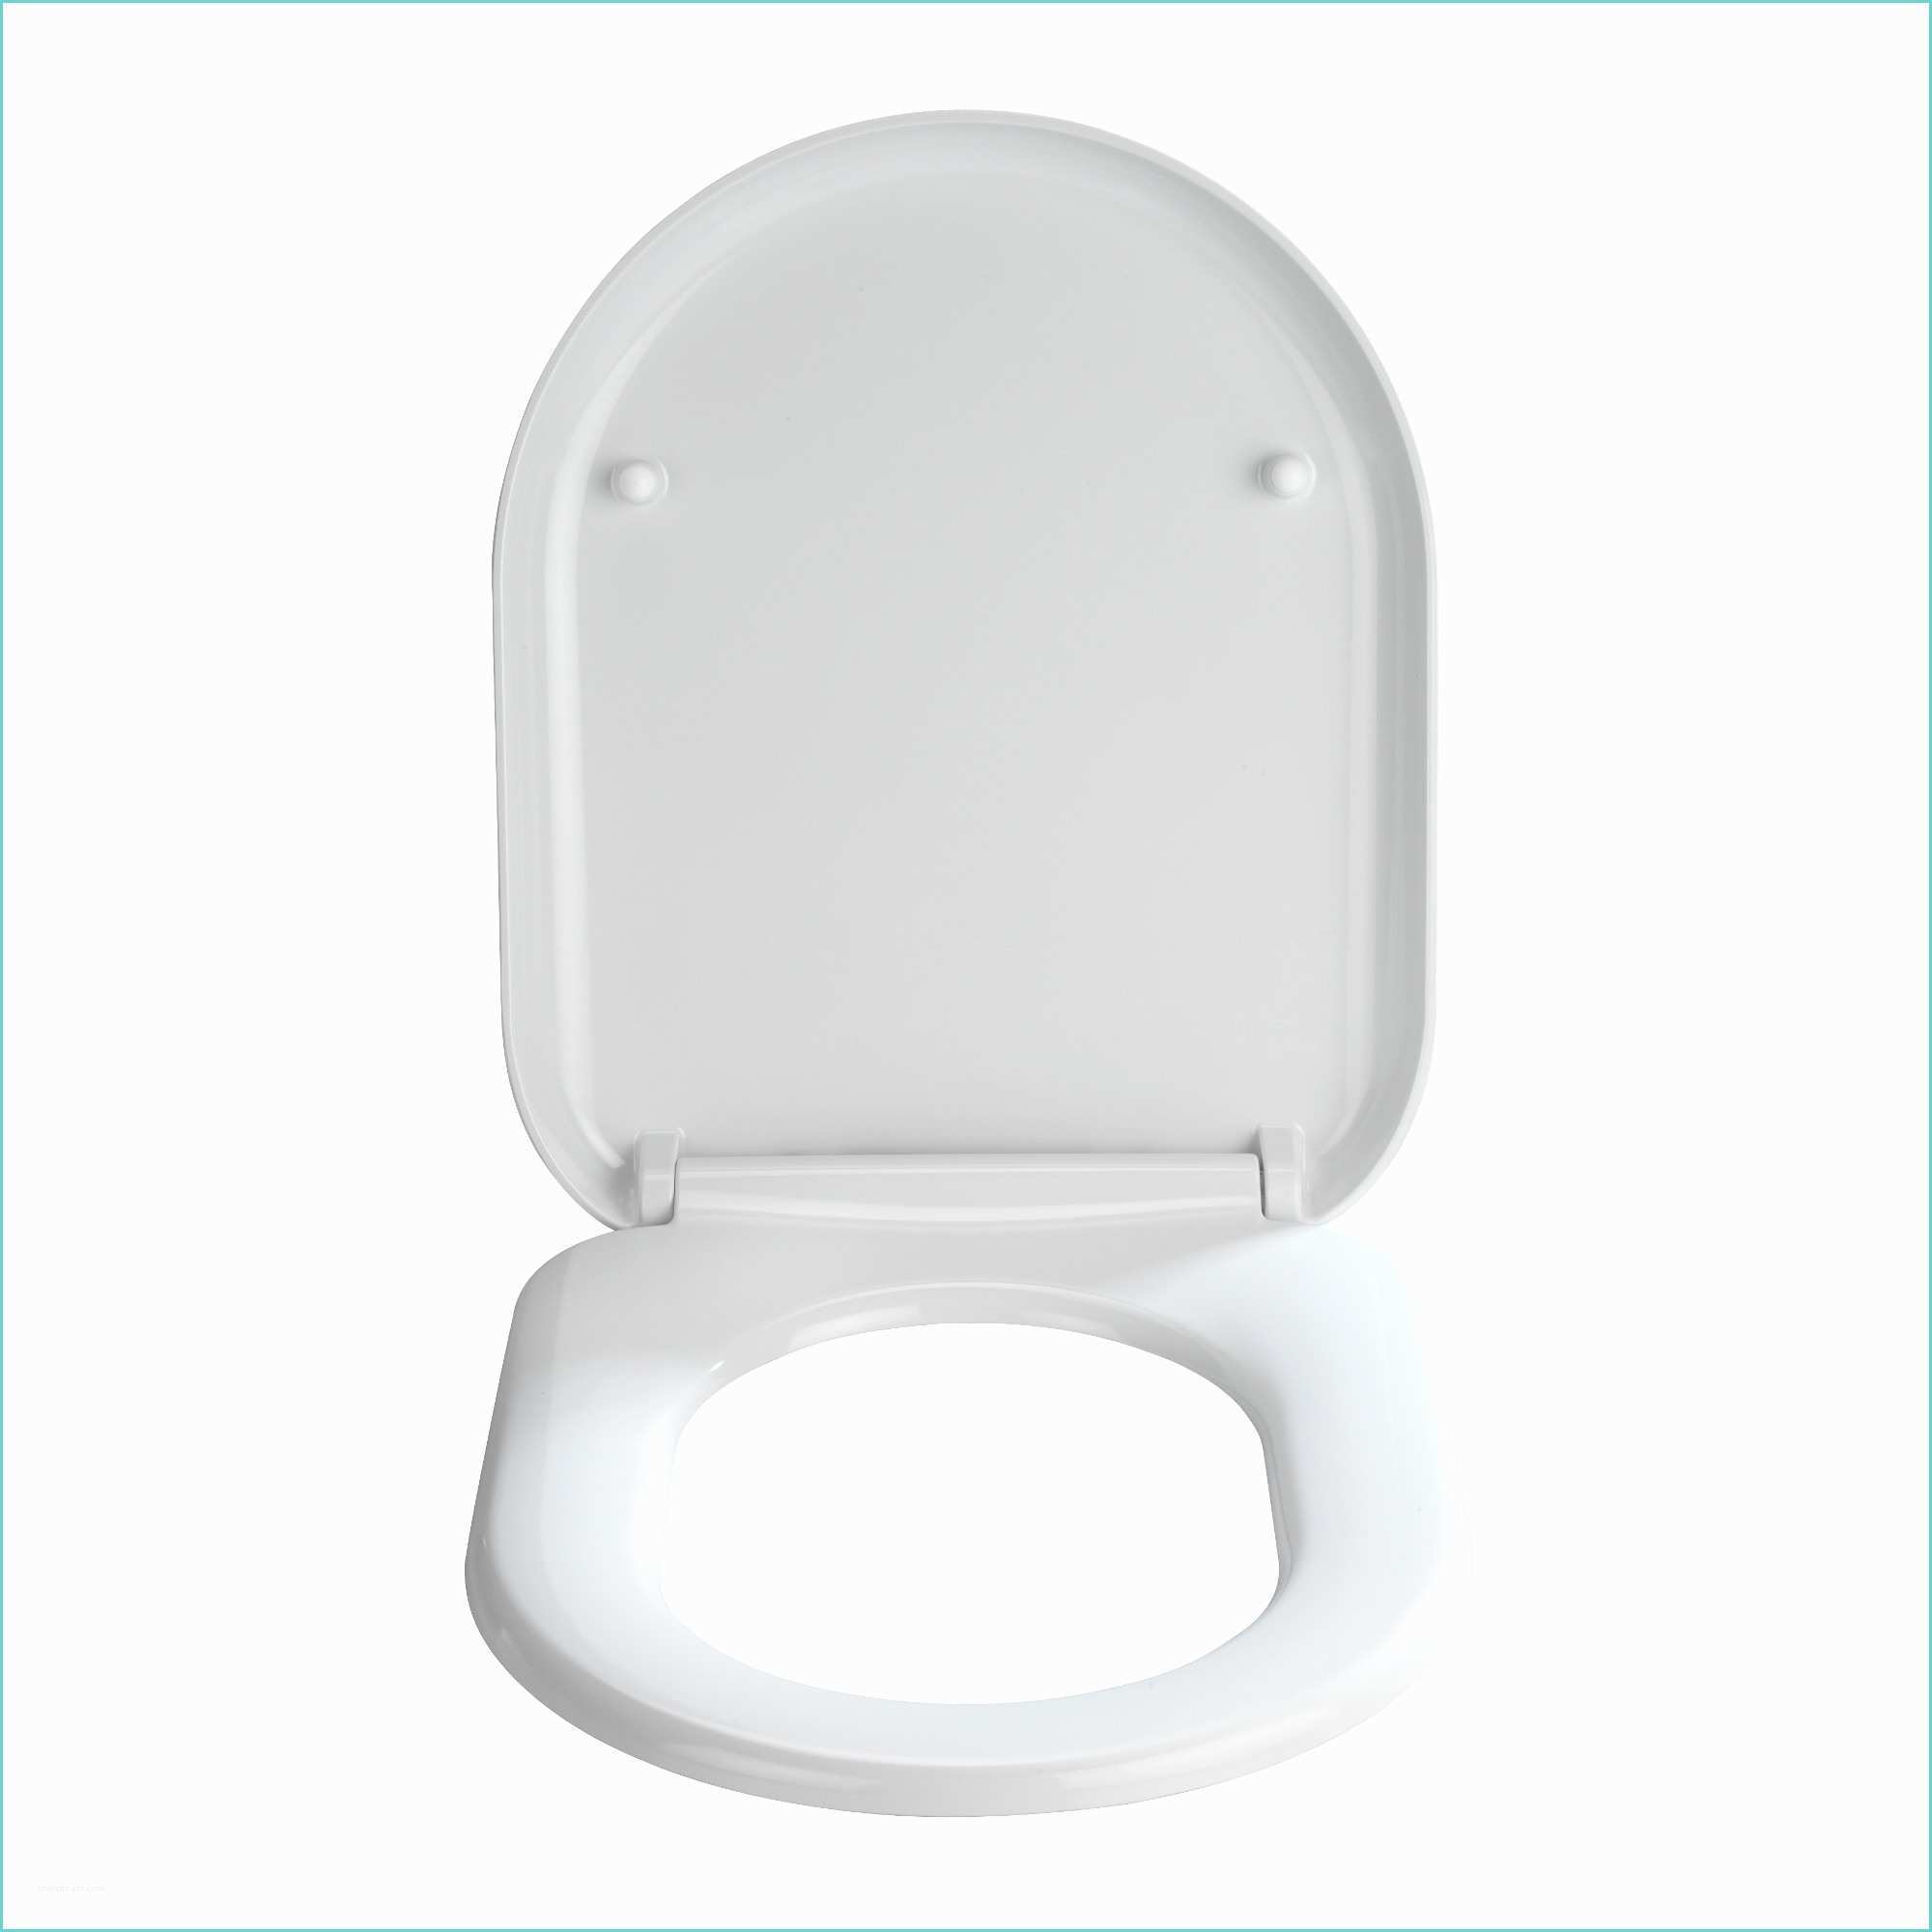 Abattant Wc Wenko Lunette De toilette Blanche Design Accesoires toilettes